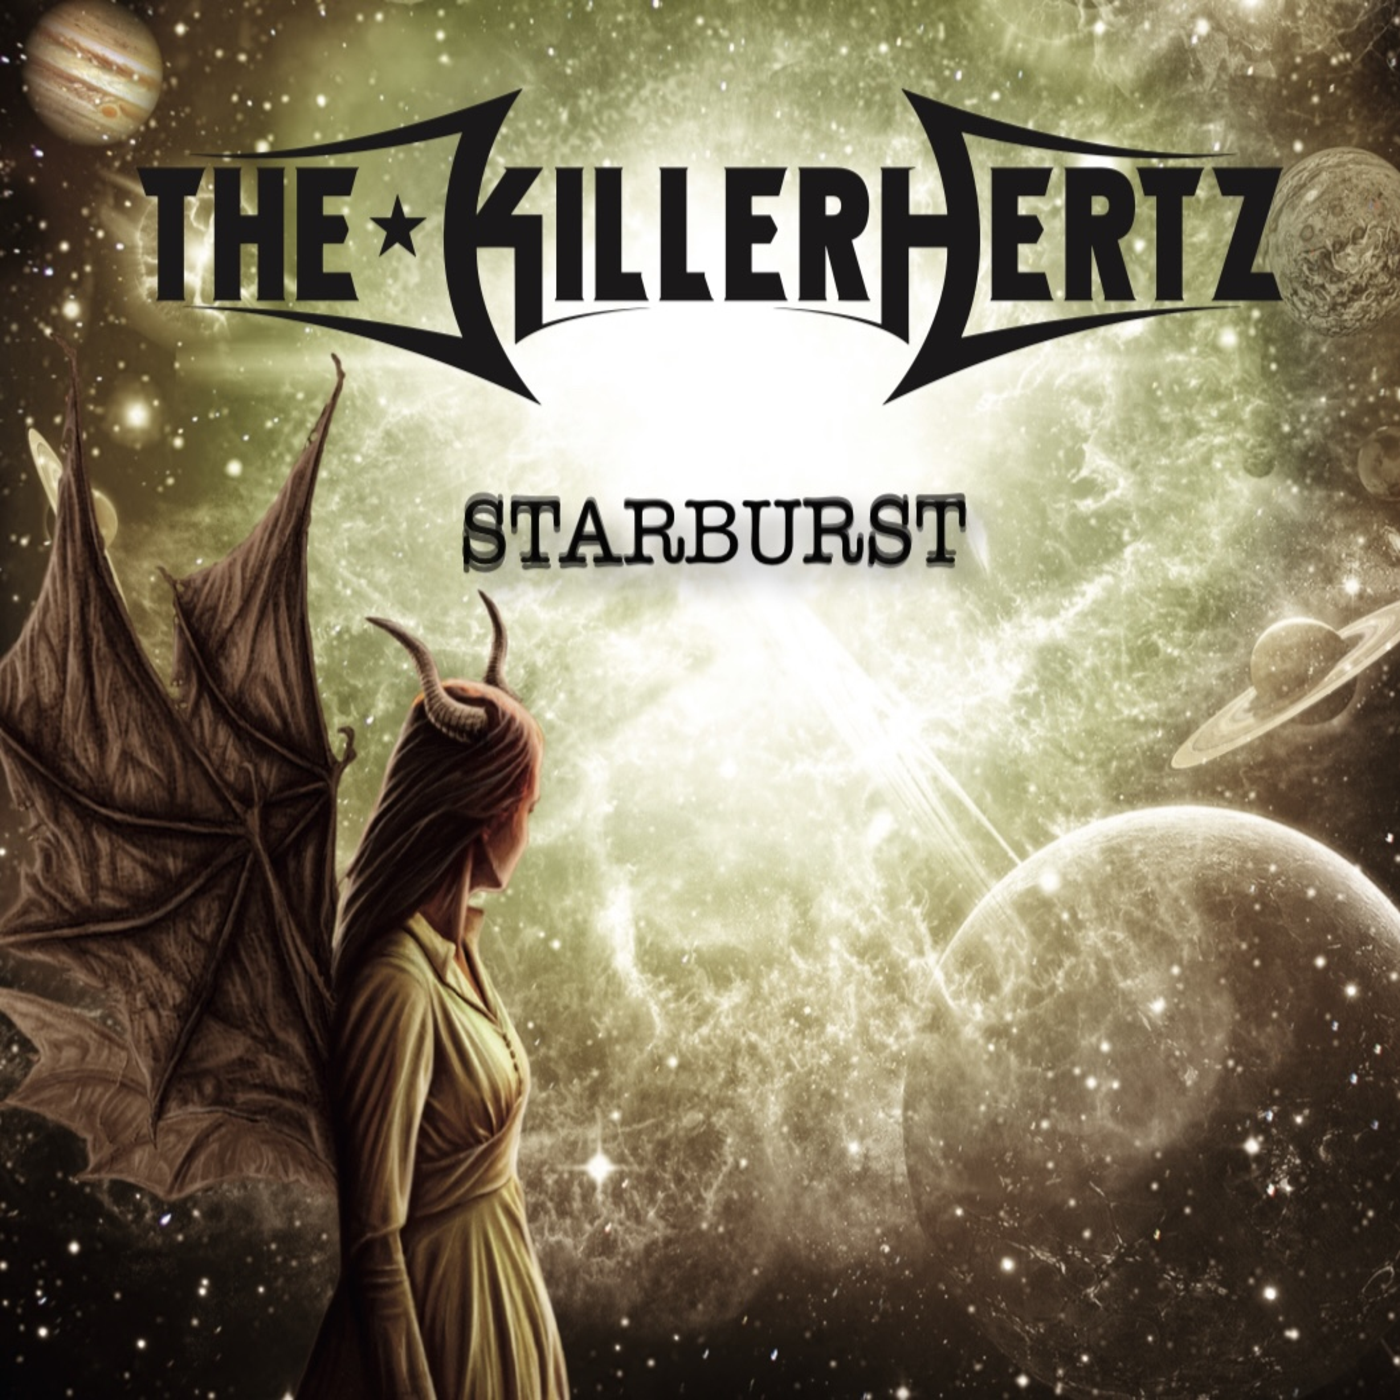 the-killerhertz-neues-album-starburst-erscheint-am-07-oktober